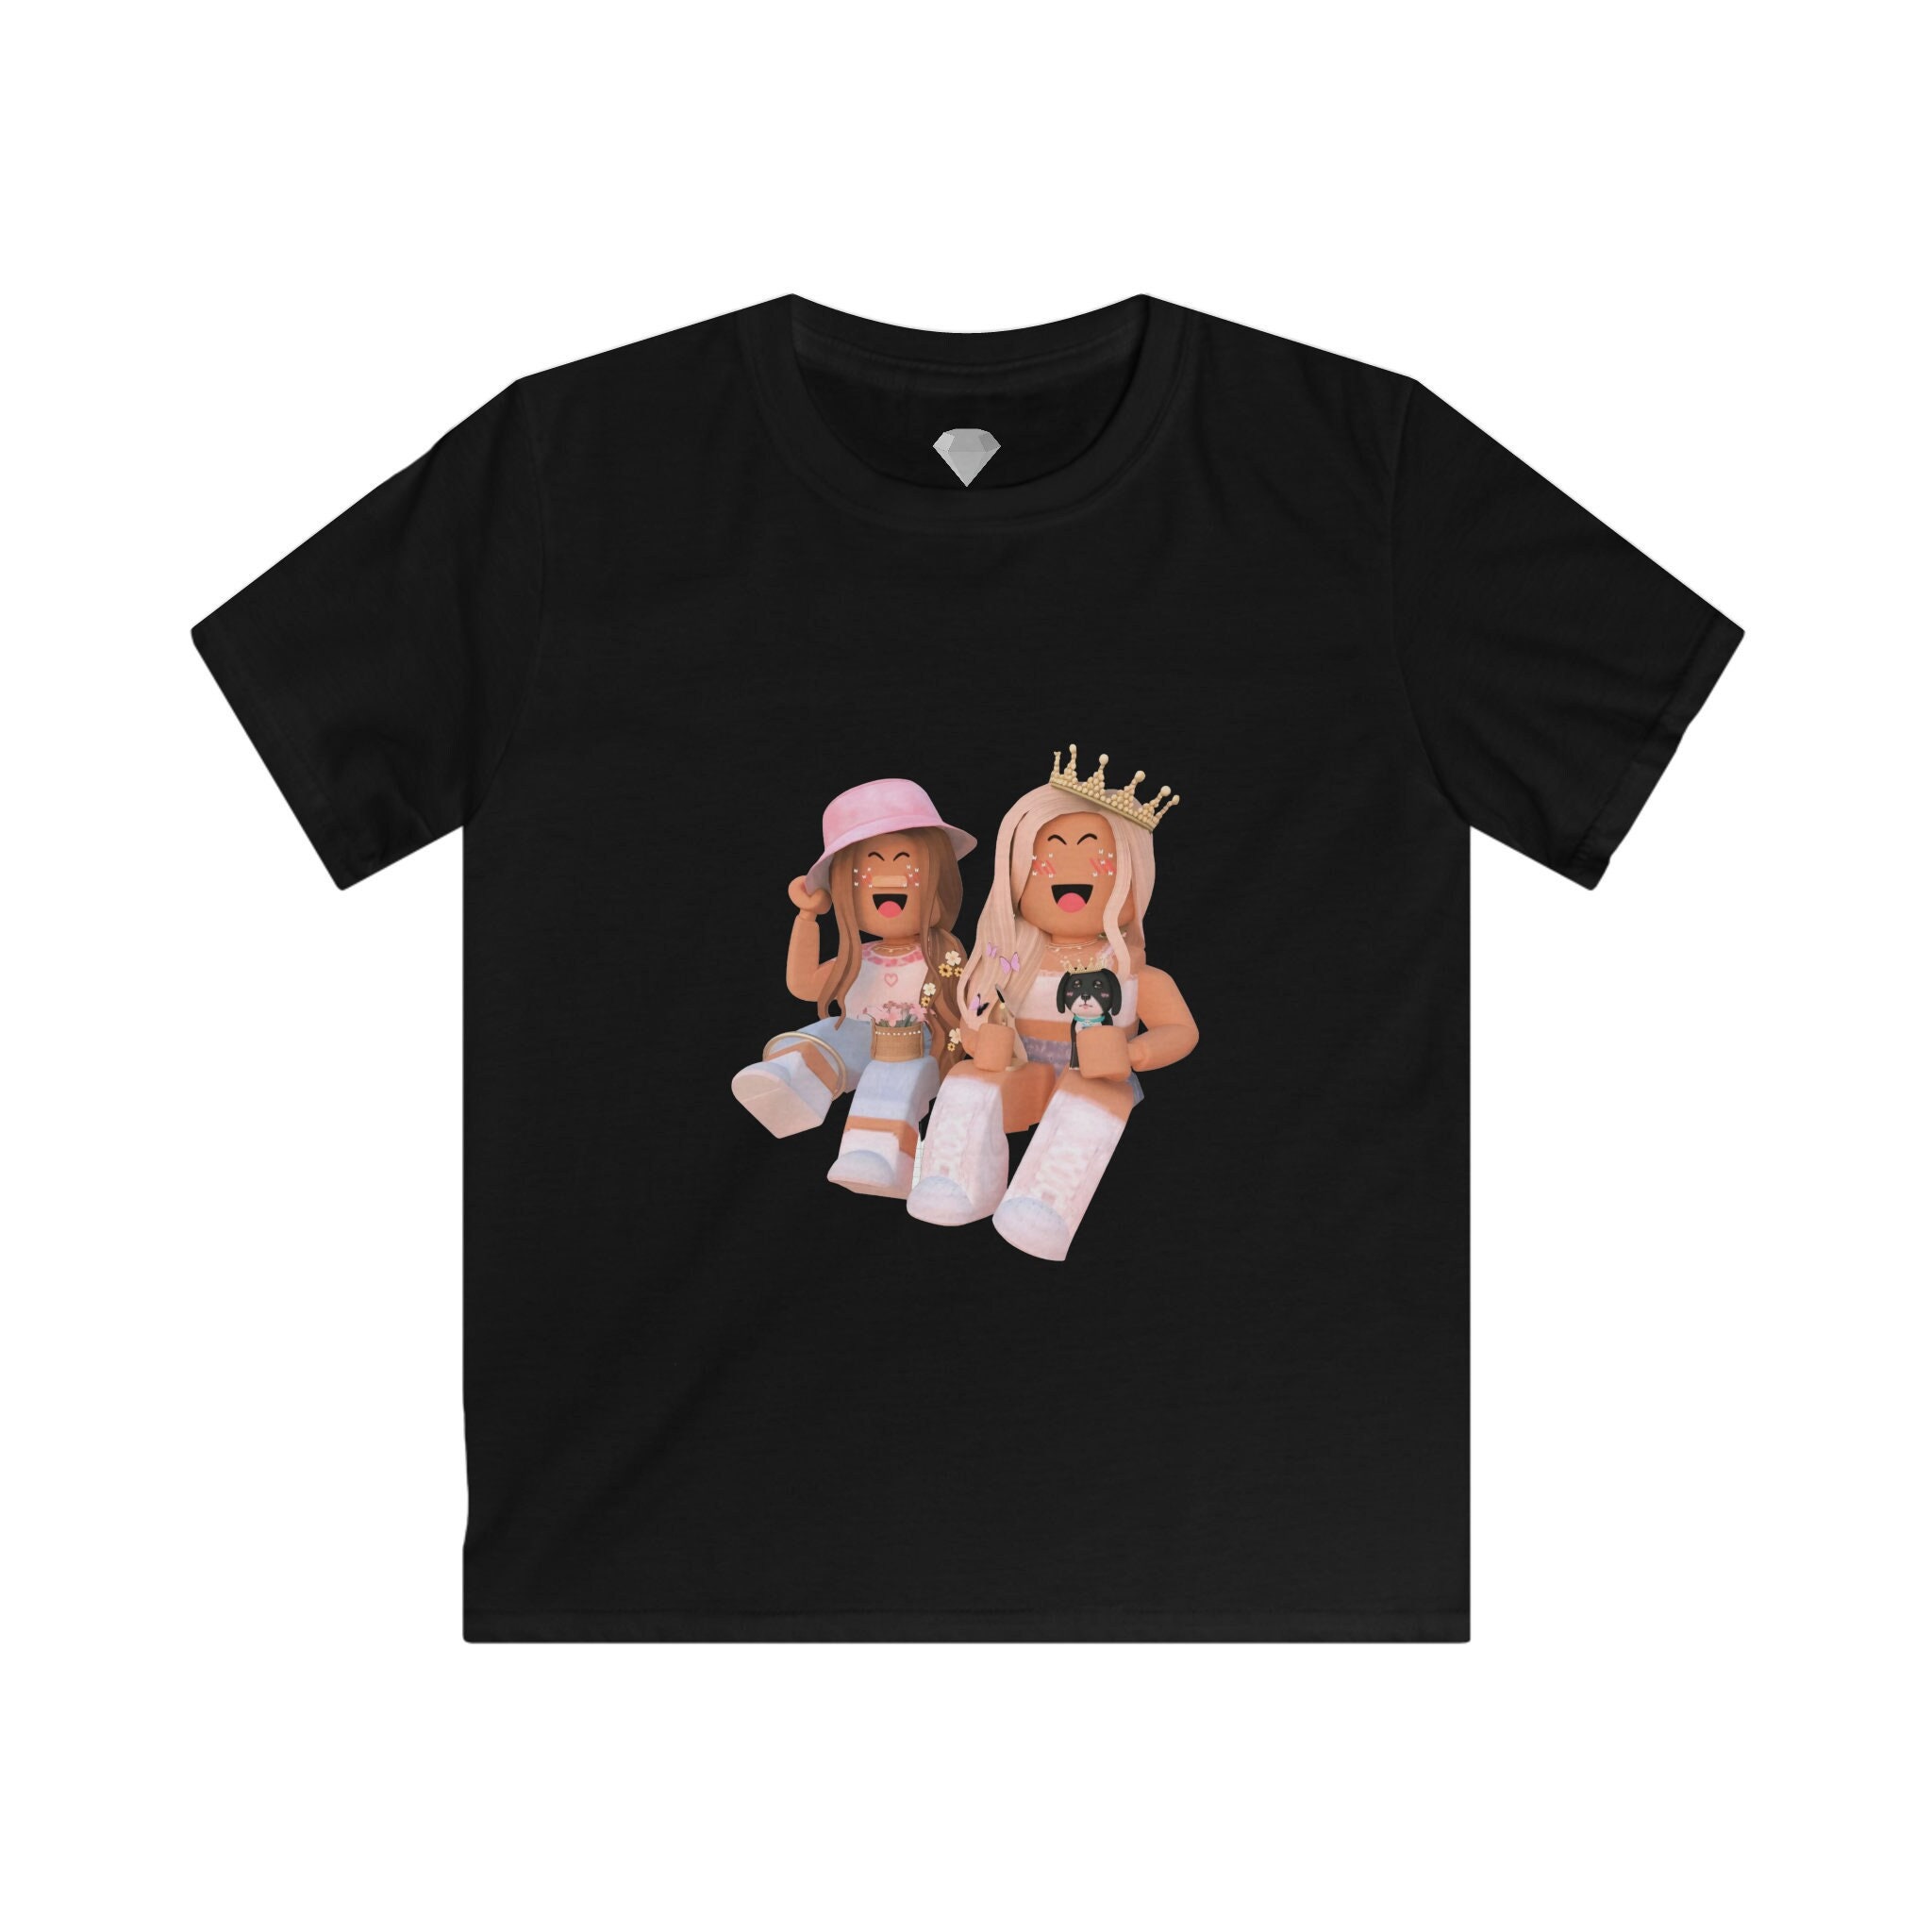 Roblox Girl Kids T-shirt Queen 